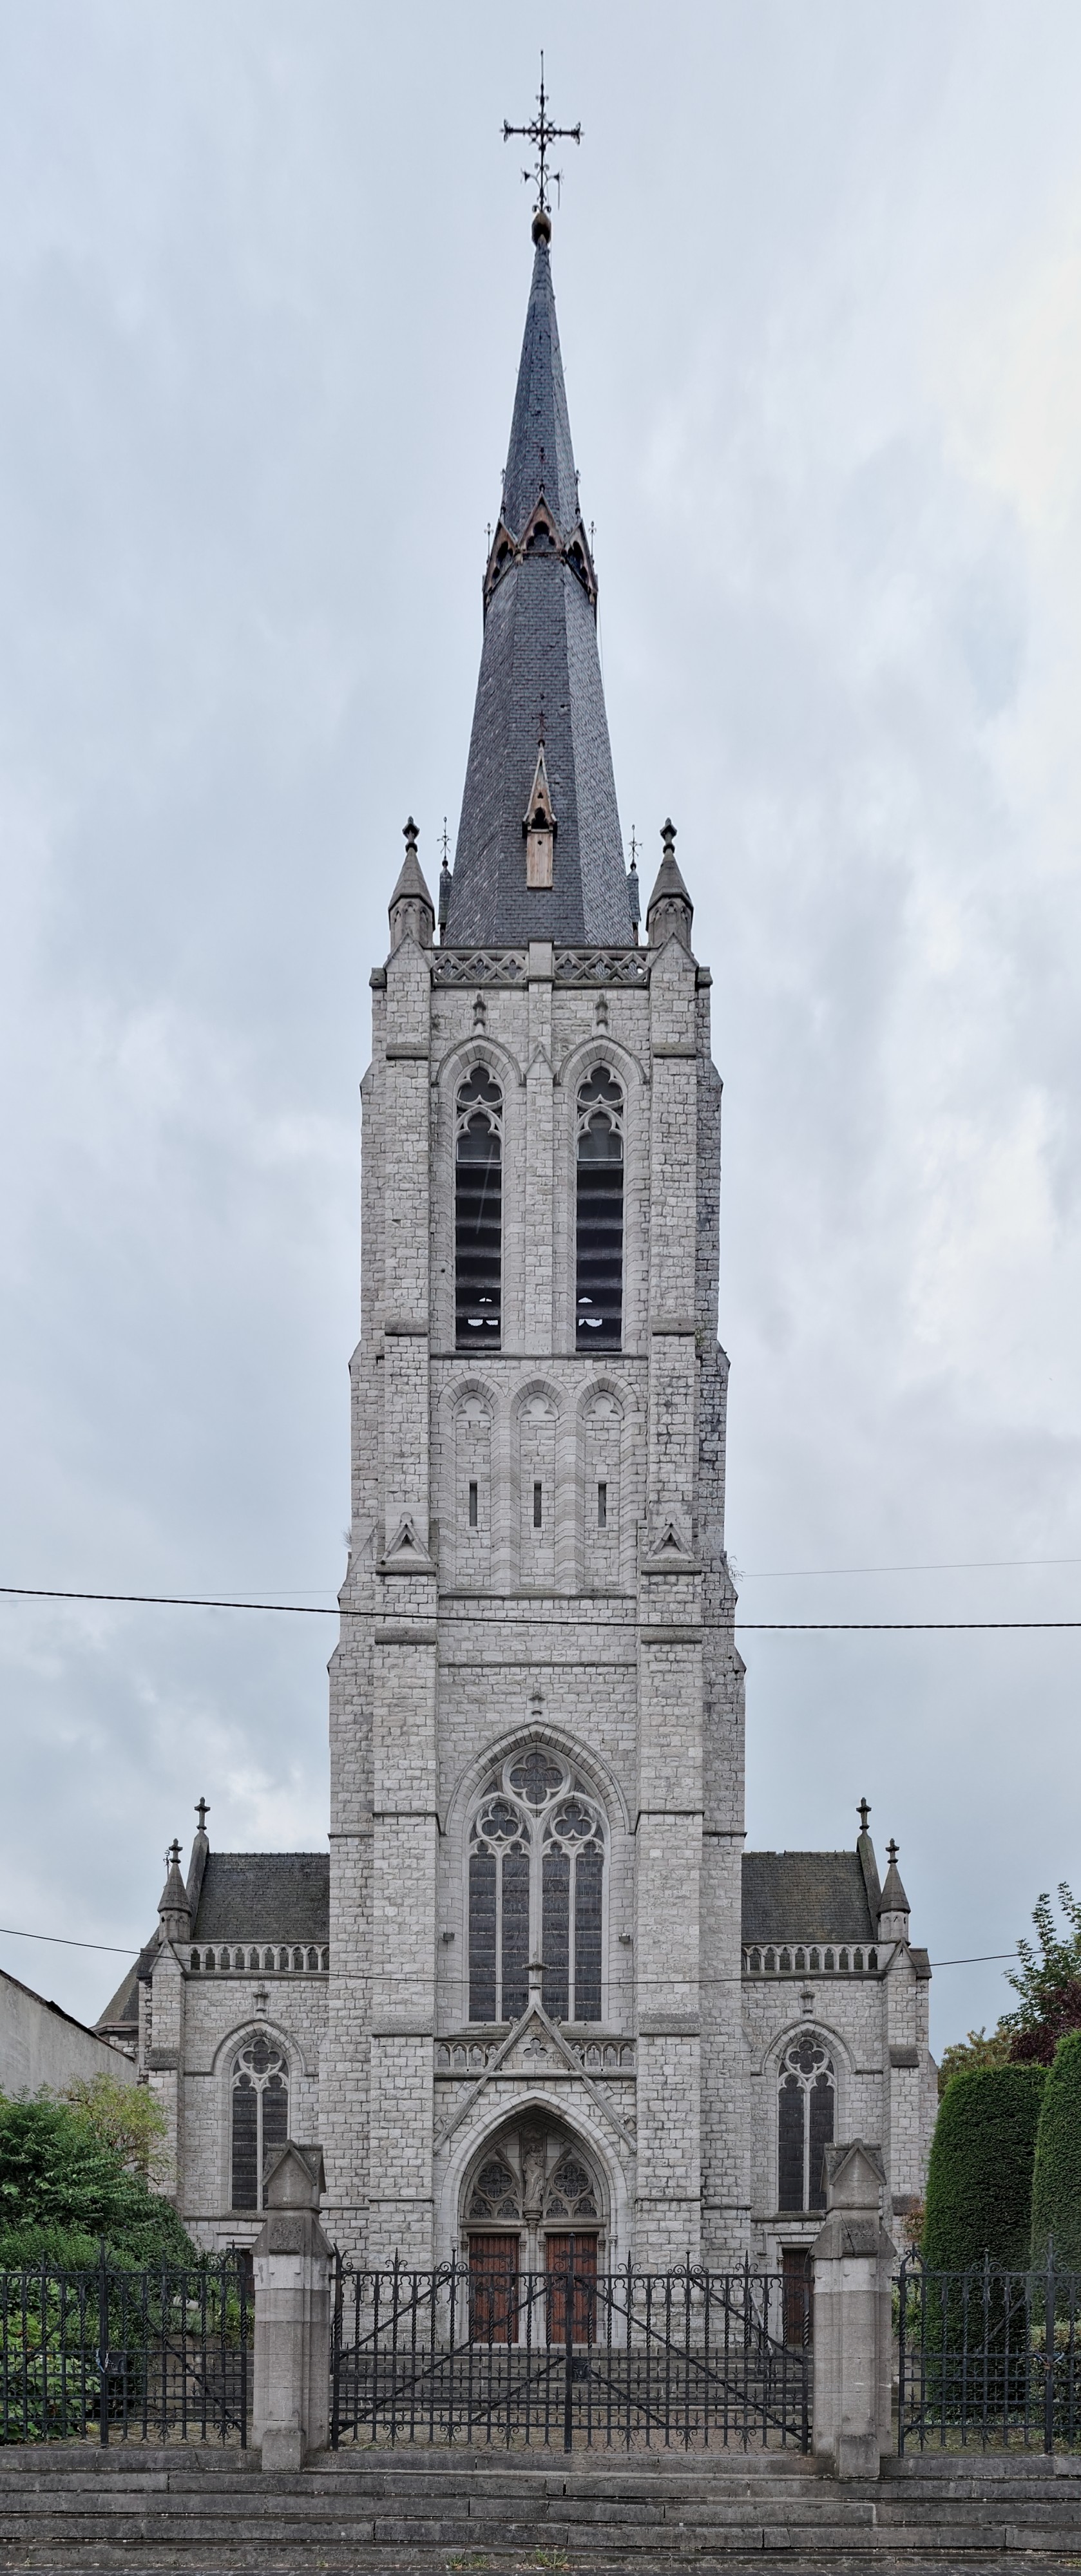 Église de la Sainte-Vierge à Marchienne-au-Pont, Charleroi (DSCF7723-DSCF7725)